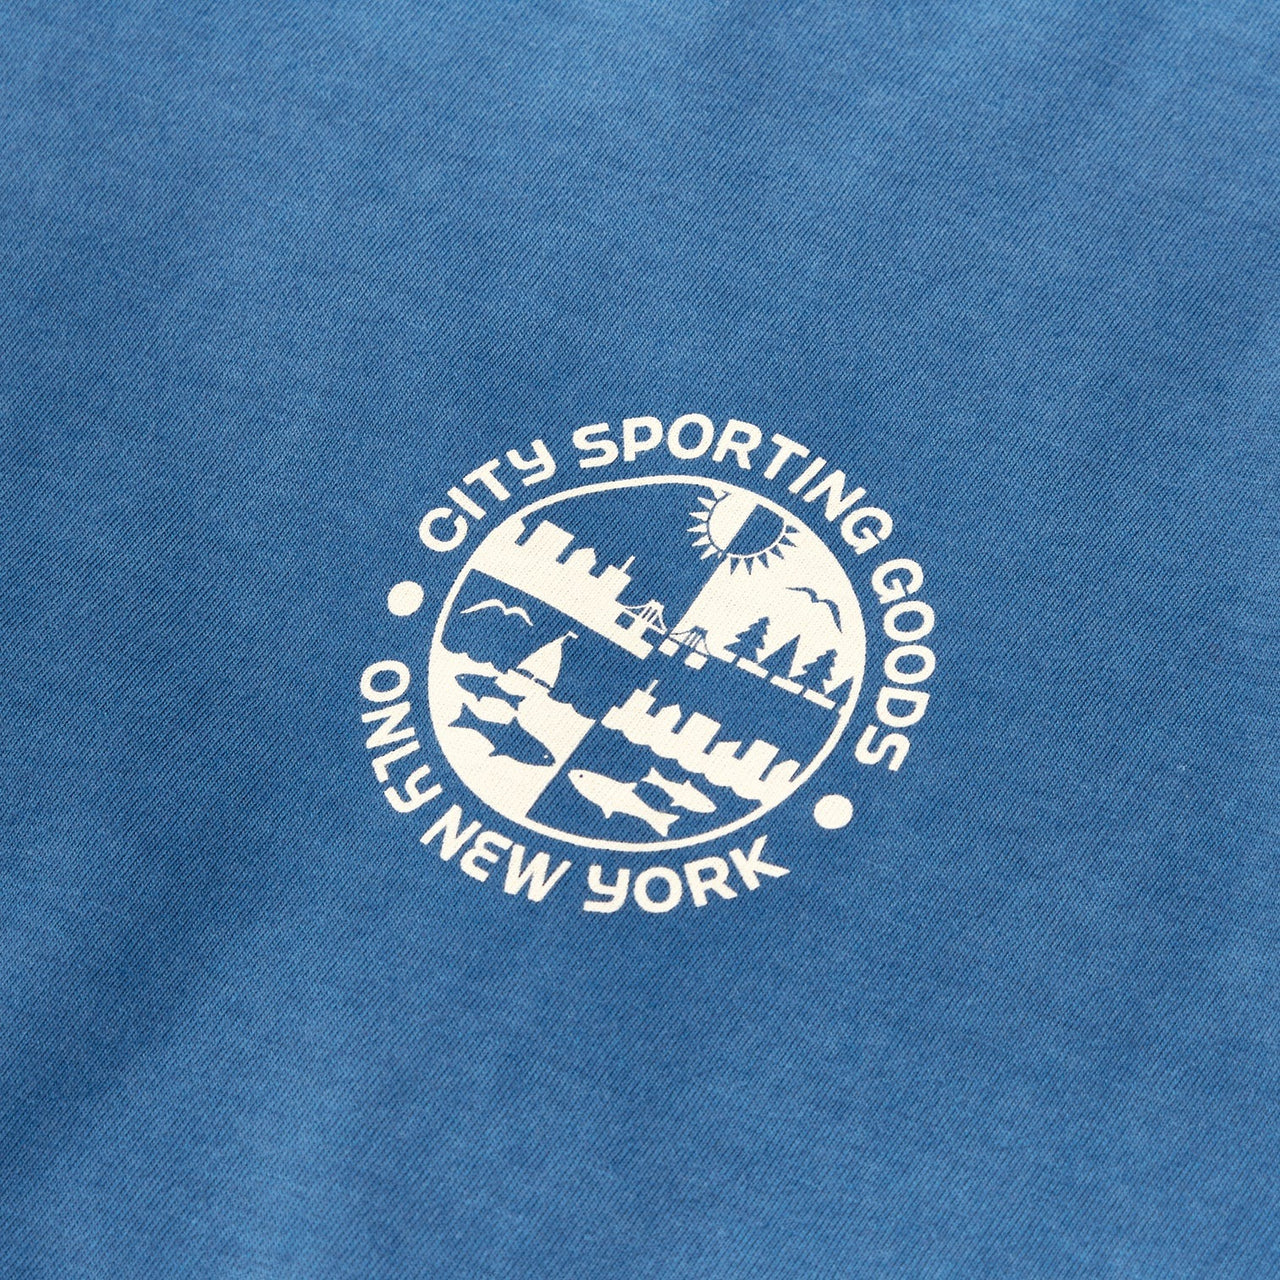 City Sporting Goods Seal T-Shirt - Cobalt Blue